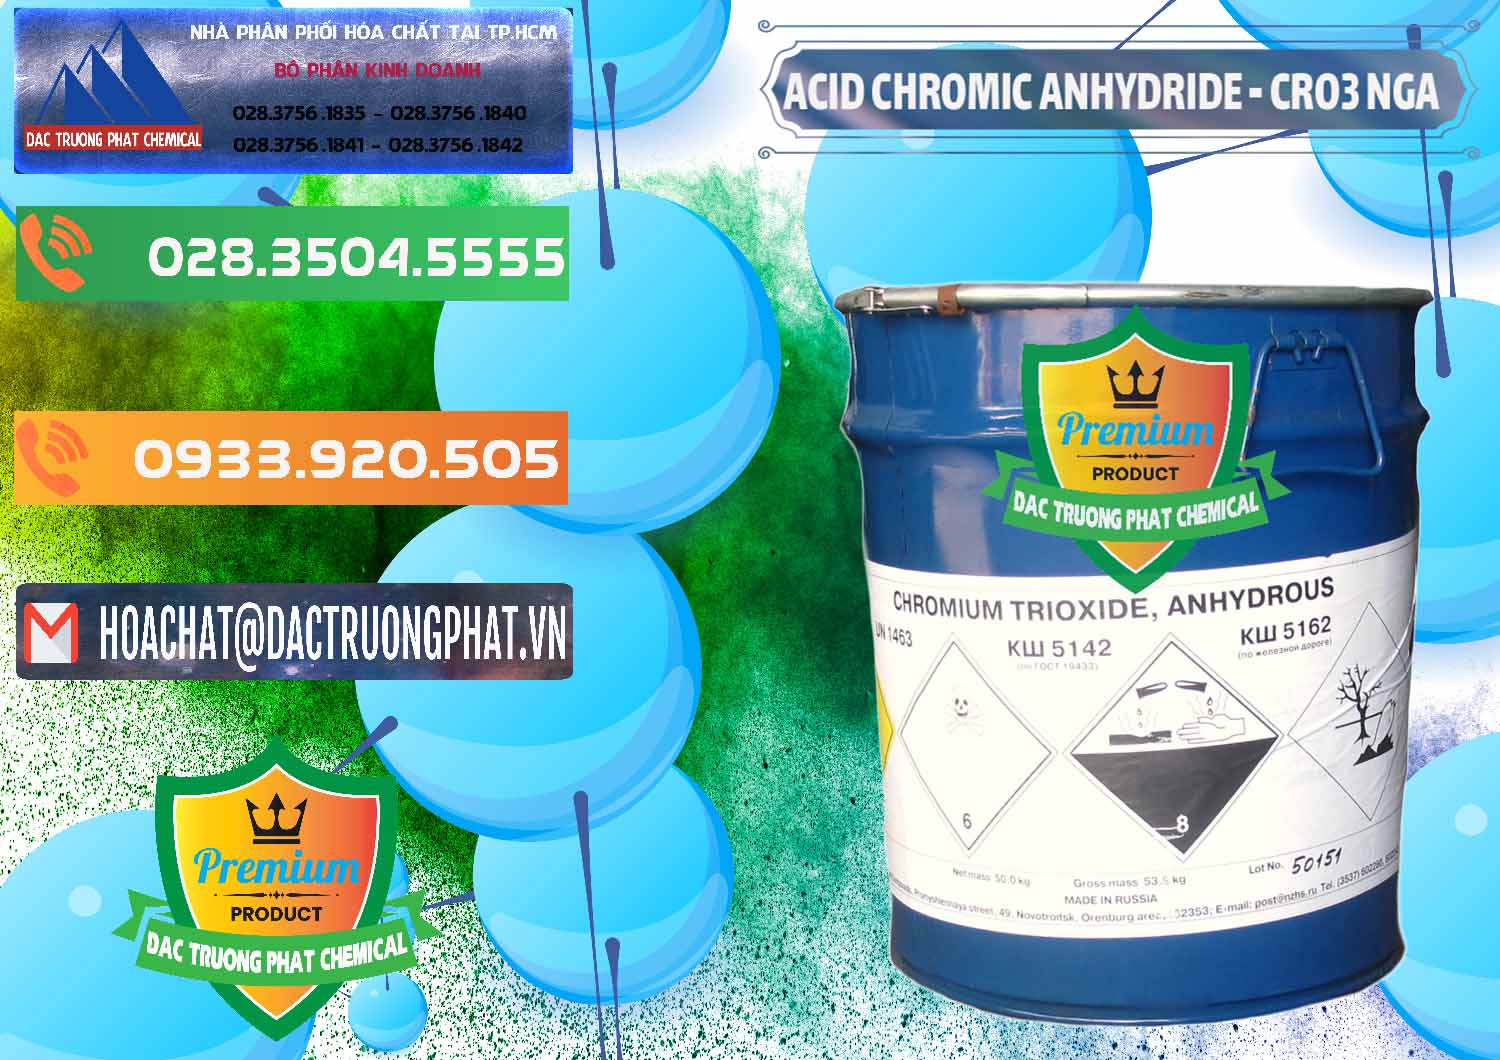 Nơi chuyên cung ứng _ bán Acid Chromic Anhydride - Cromic CRO3 Nga Russia - 0006 - Đơn vị chuyên cung cấp & nhập khẩu hóa chất tại TP.HCM - hoachatxulynuoc.com.vn